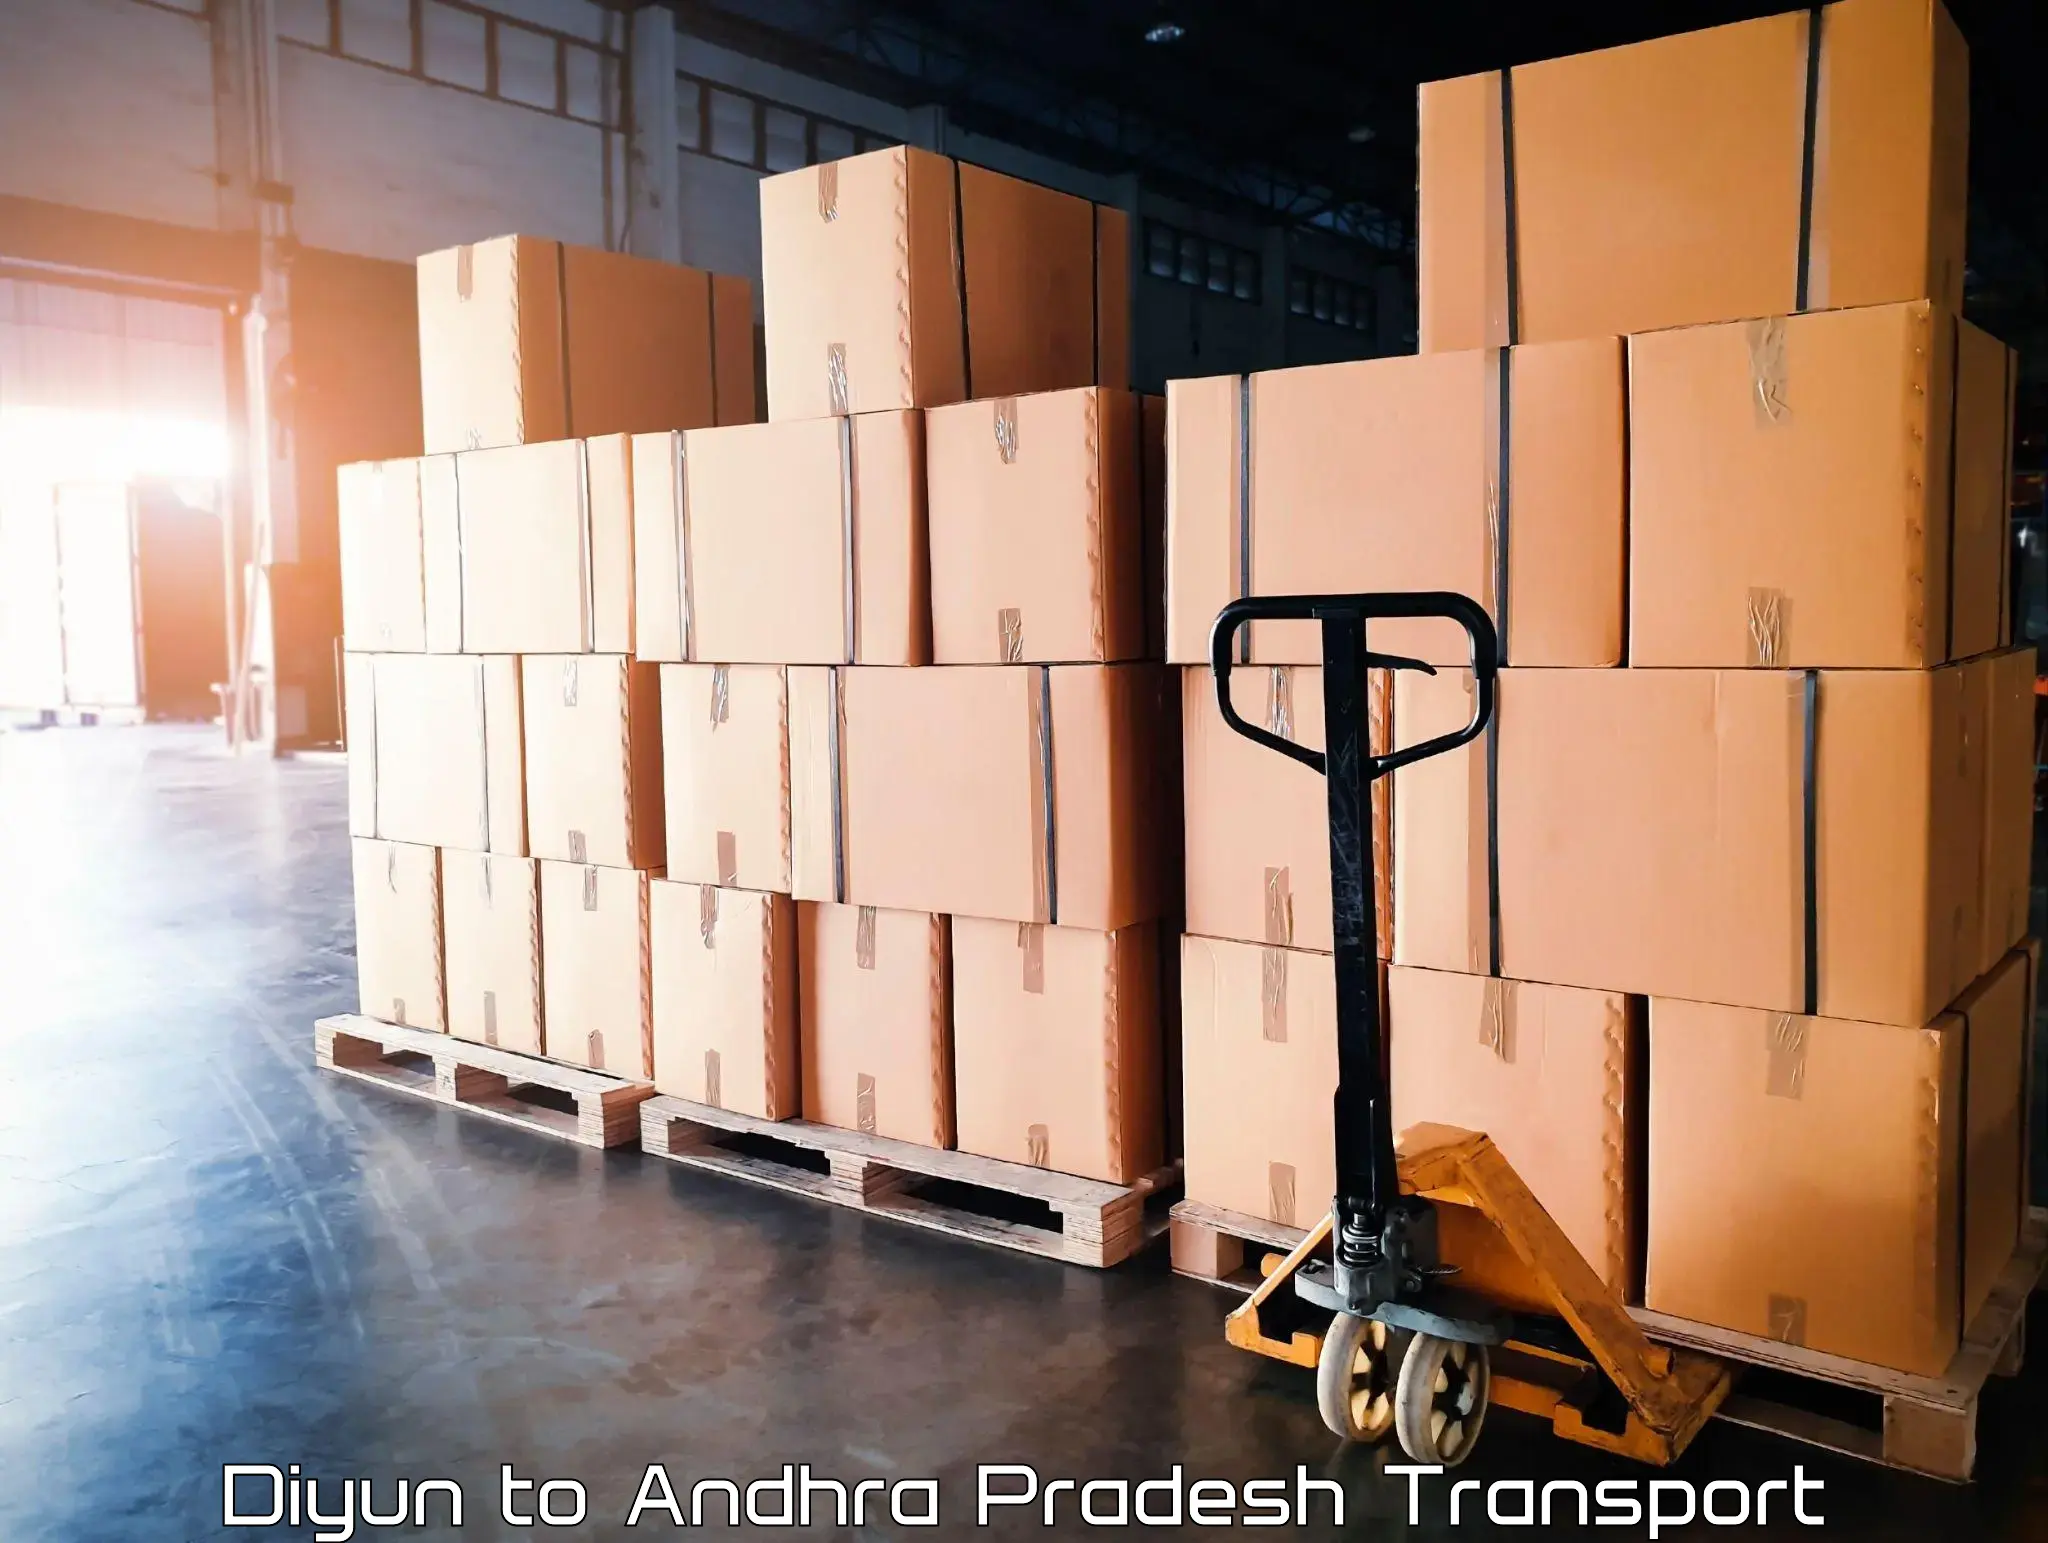 Daily transport service Diyun to Andhra Pradesh